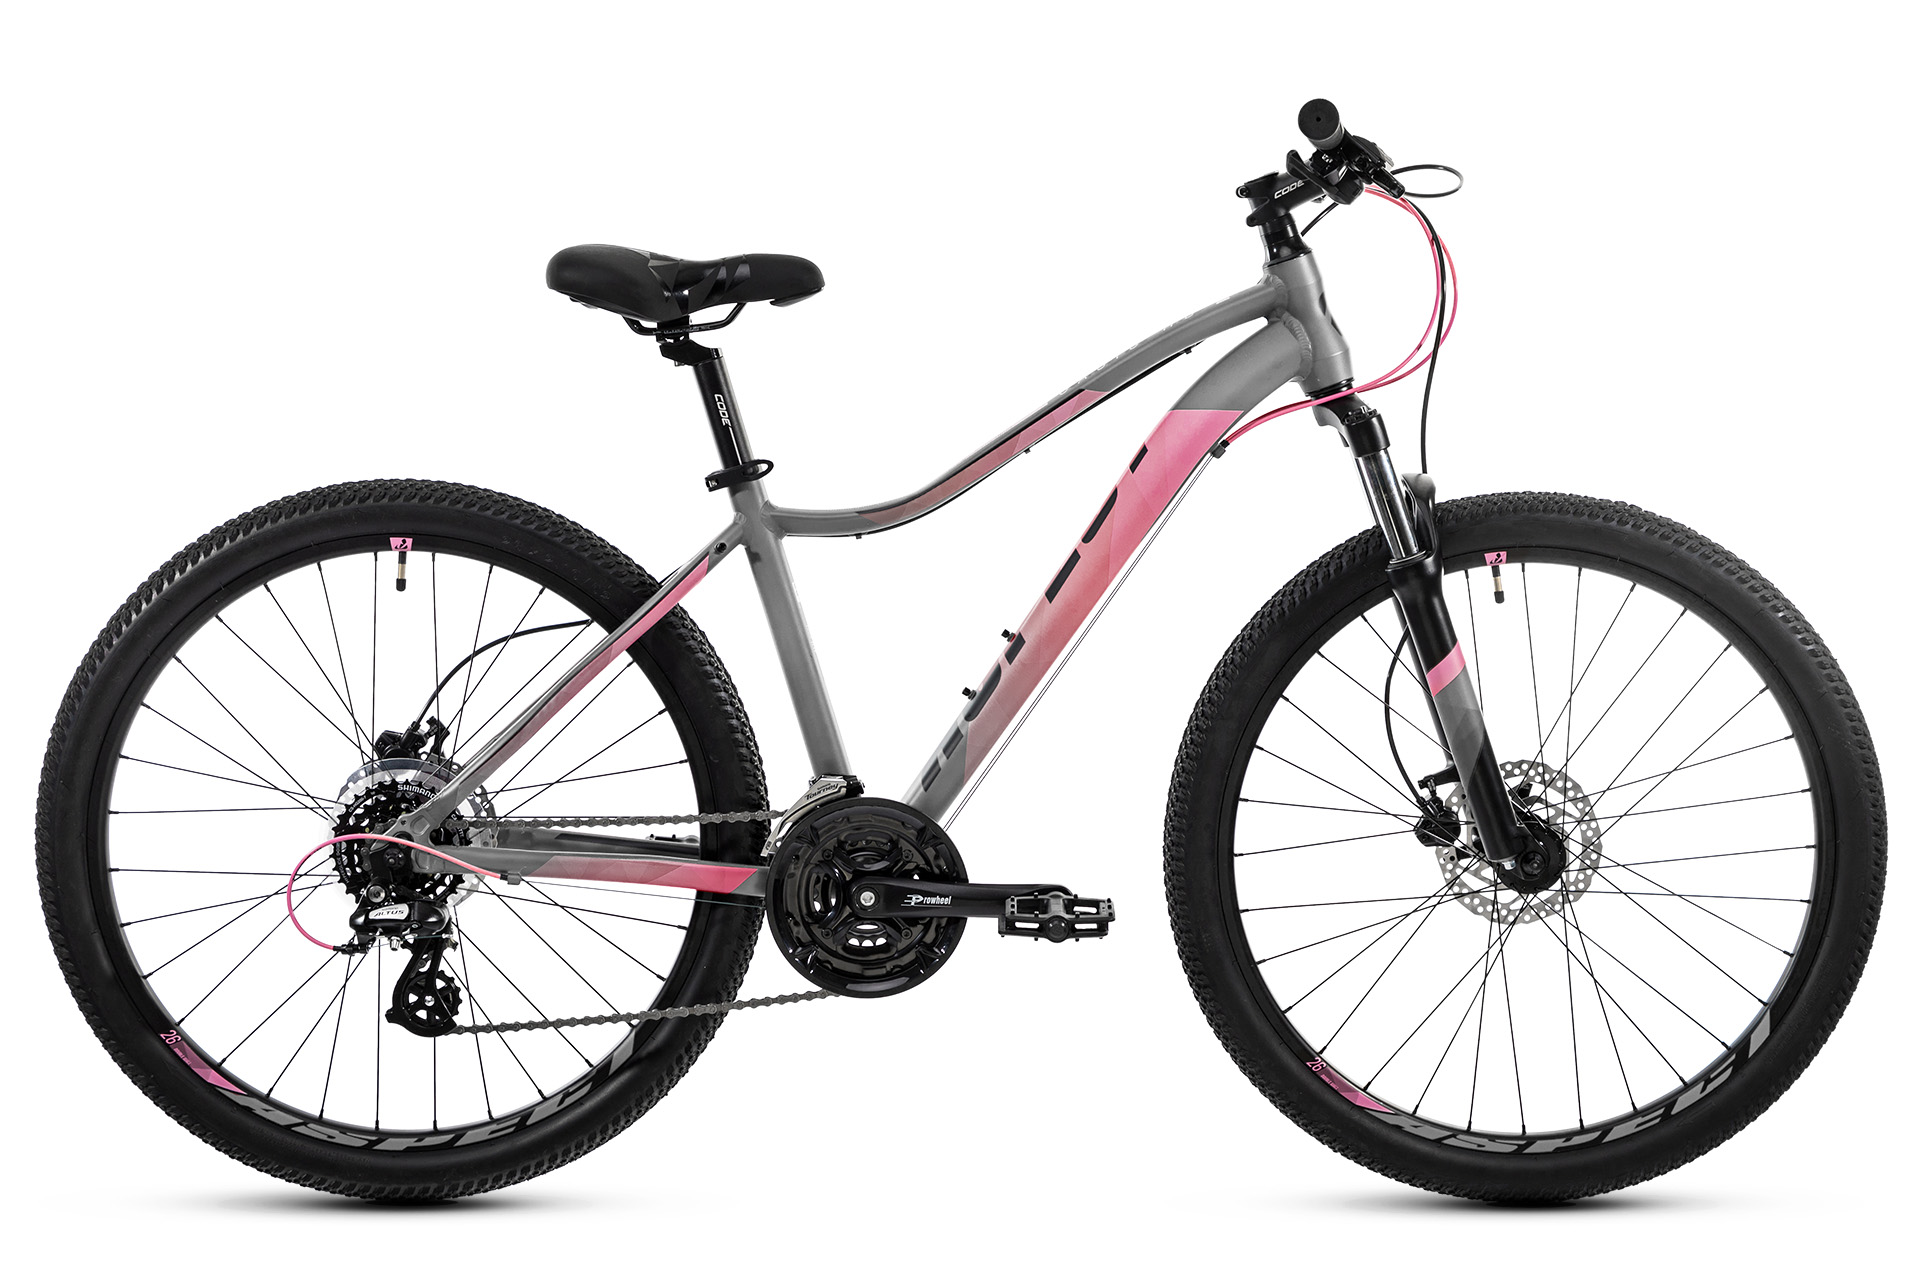  Отзывы о Женском велосипеде Aspect OASIS HD 2021